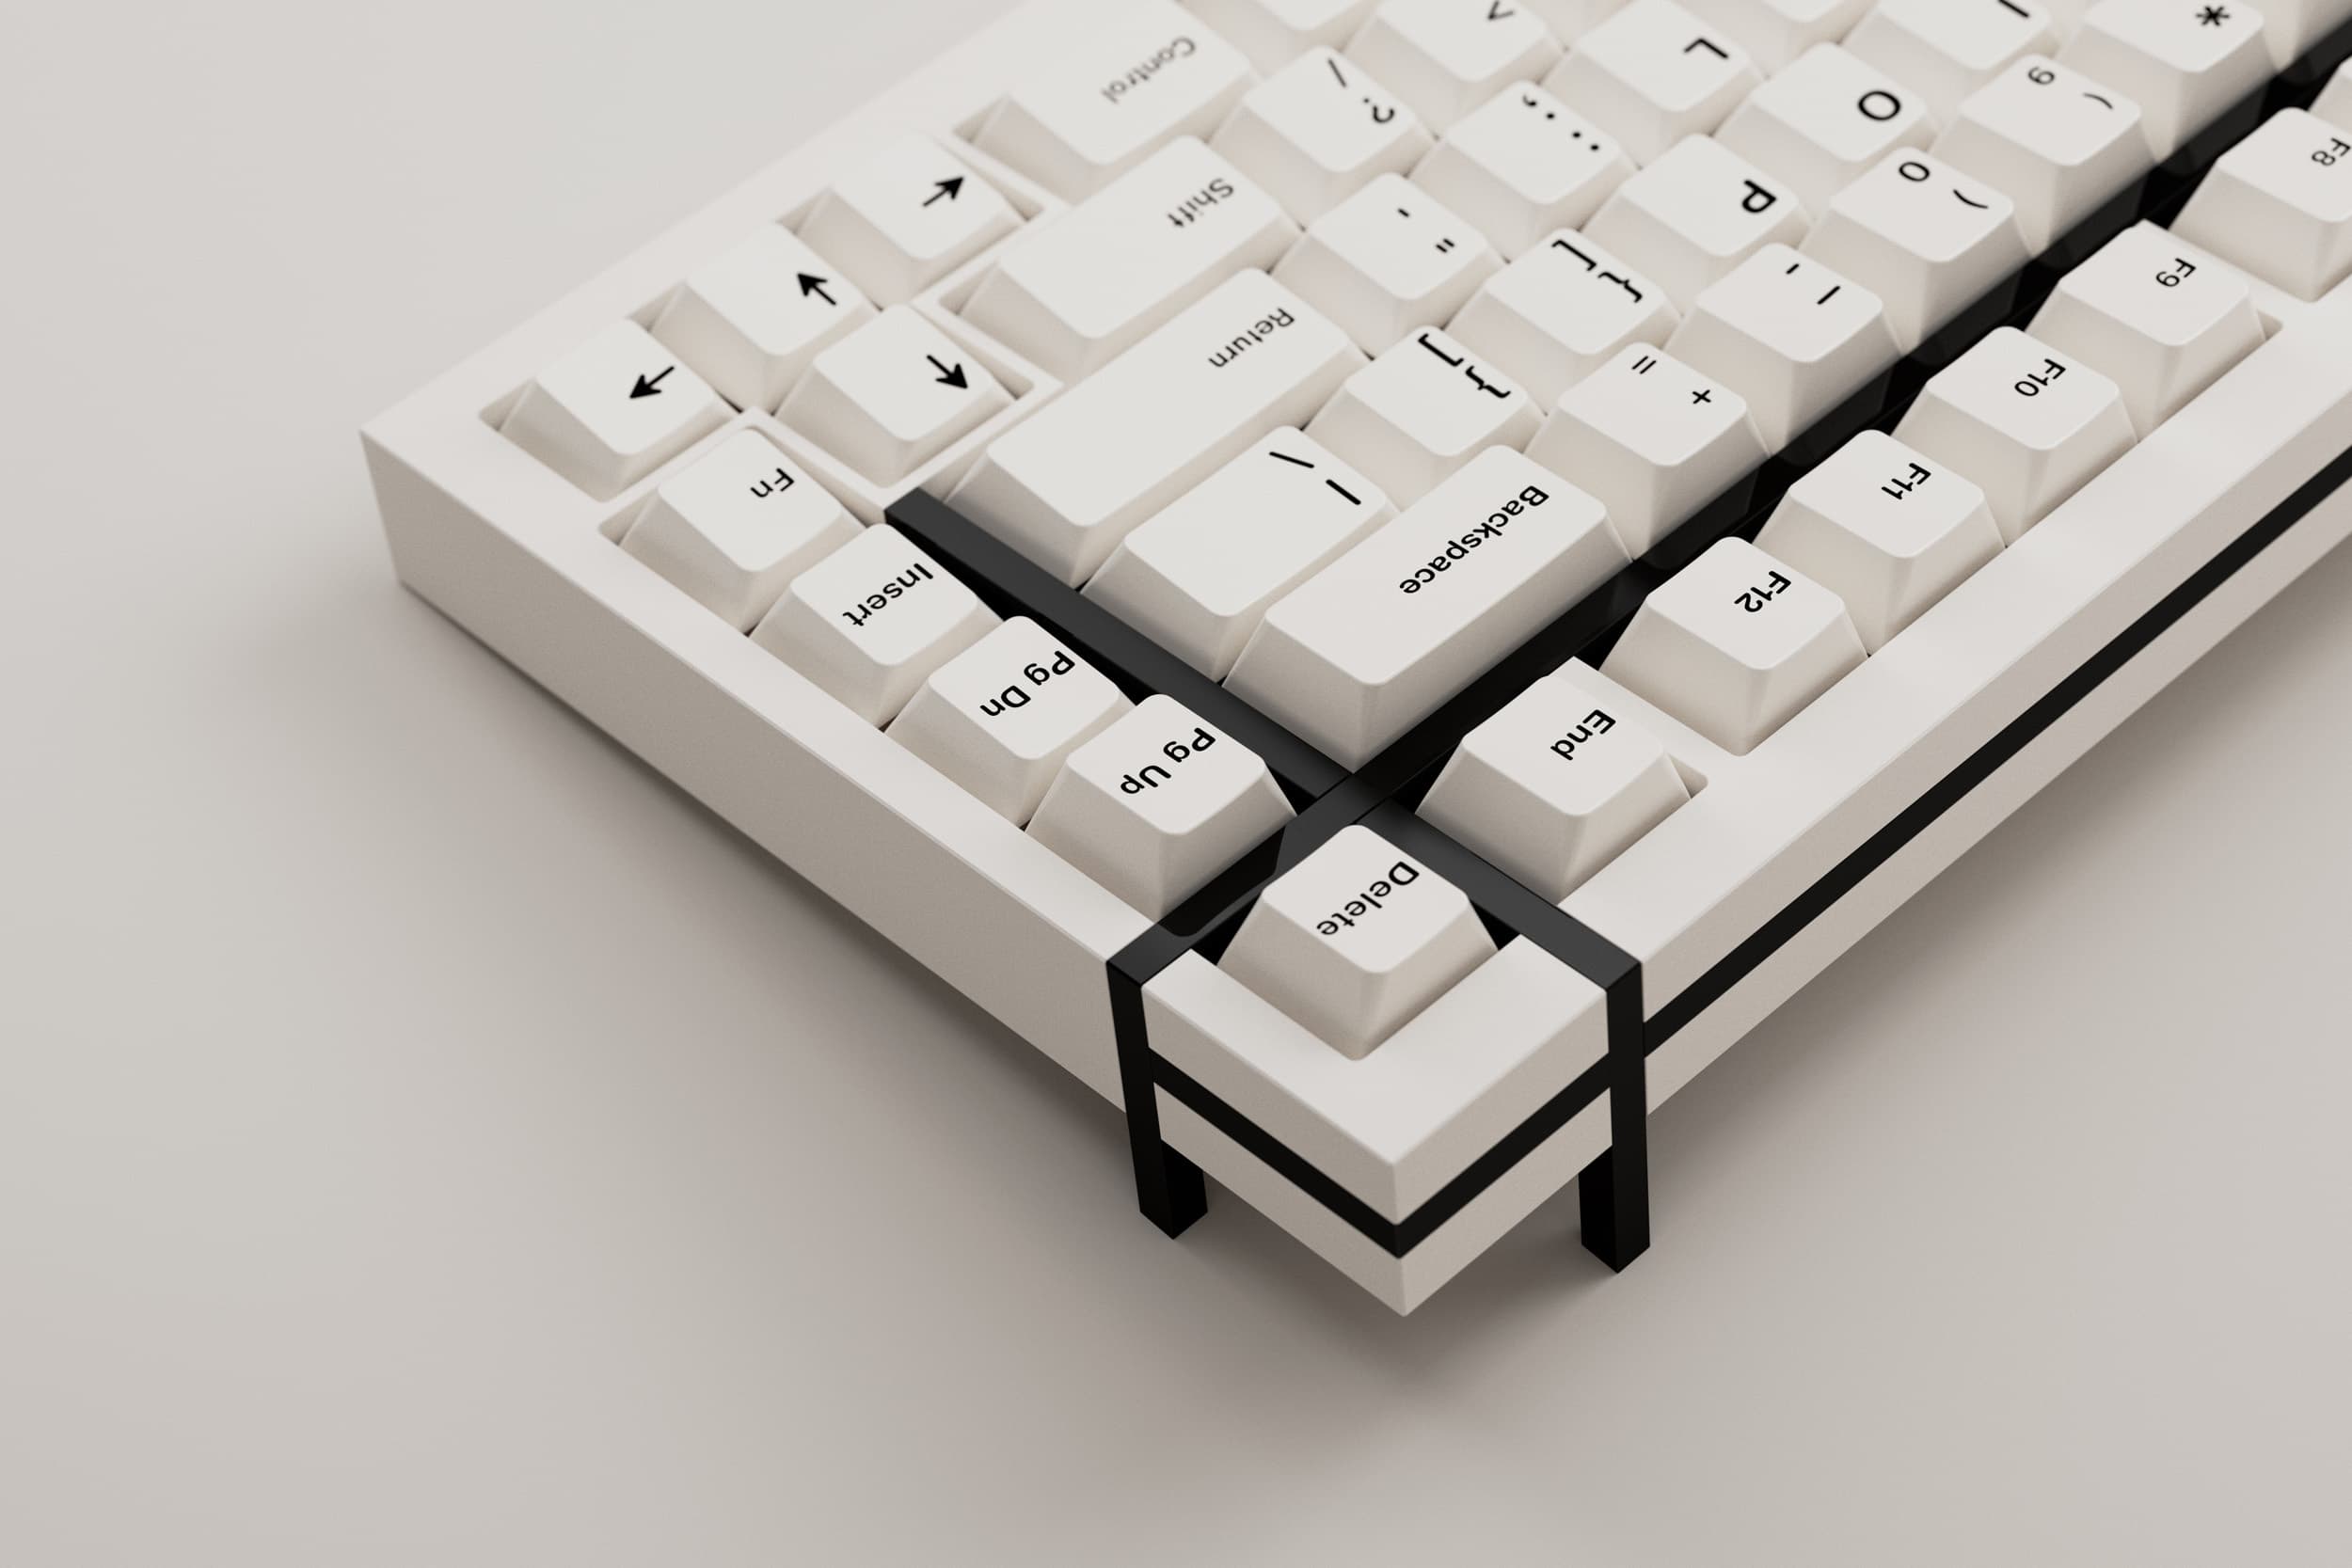 box 75 white keyboard image